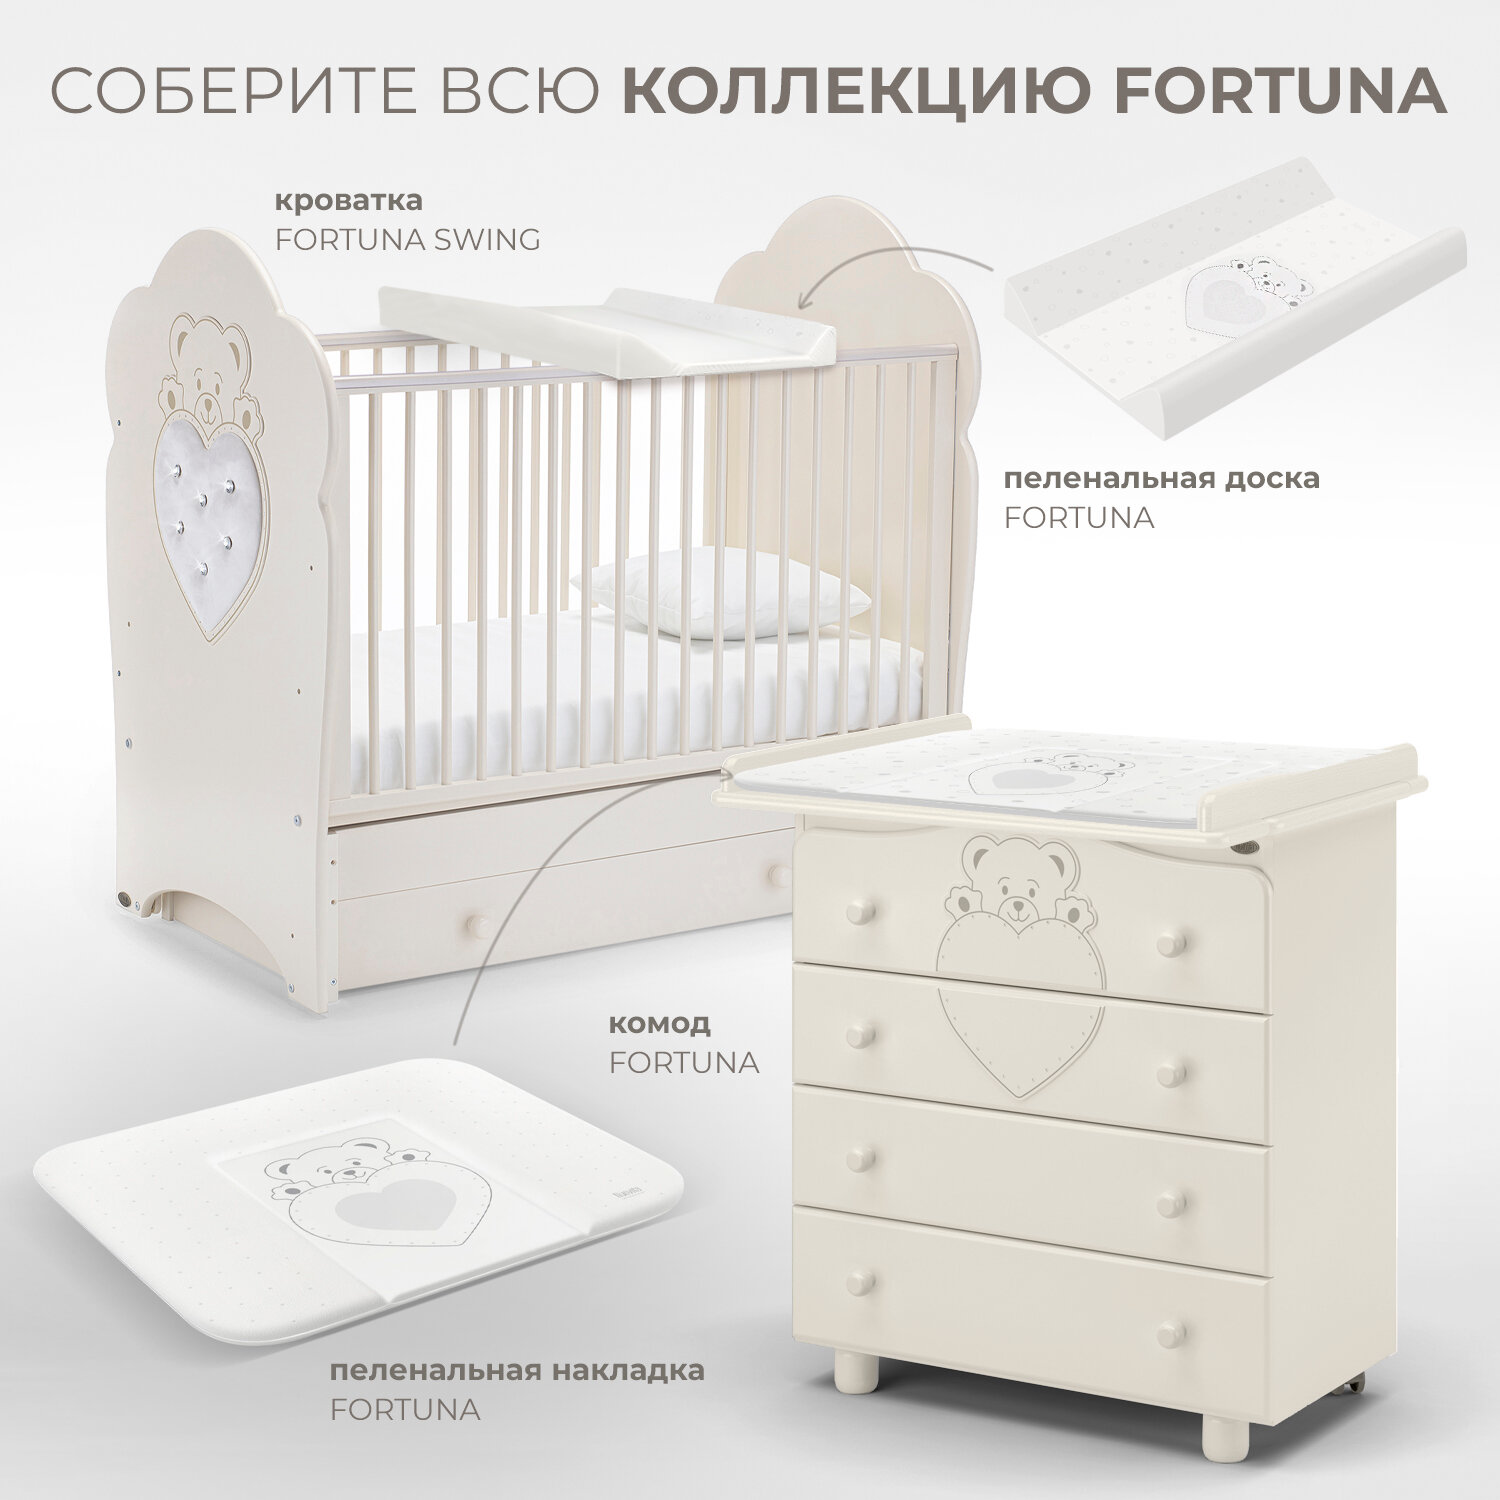 Детская кровать Nuovita Fortuna Swing, белая - фото №8